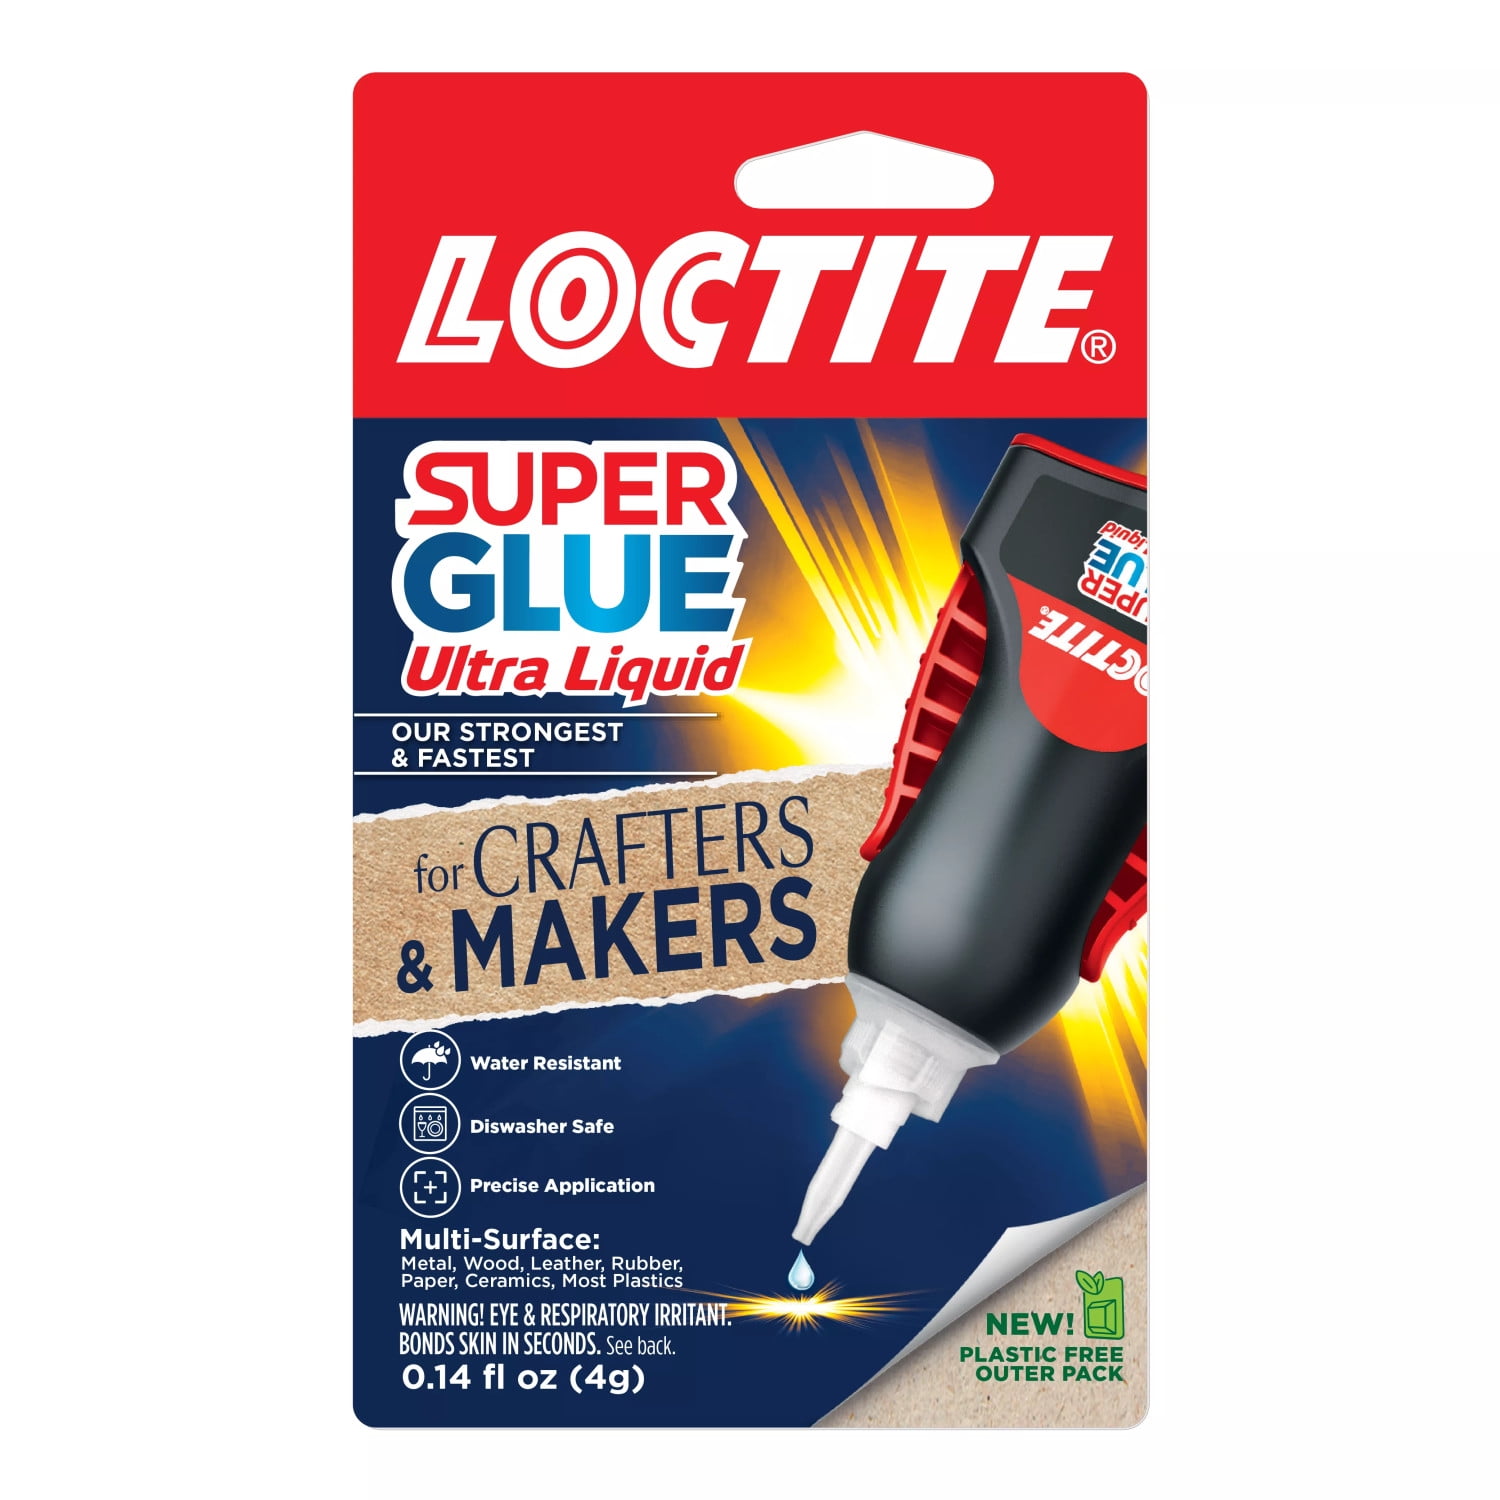 Loctite Super Glue 3-Pack